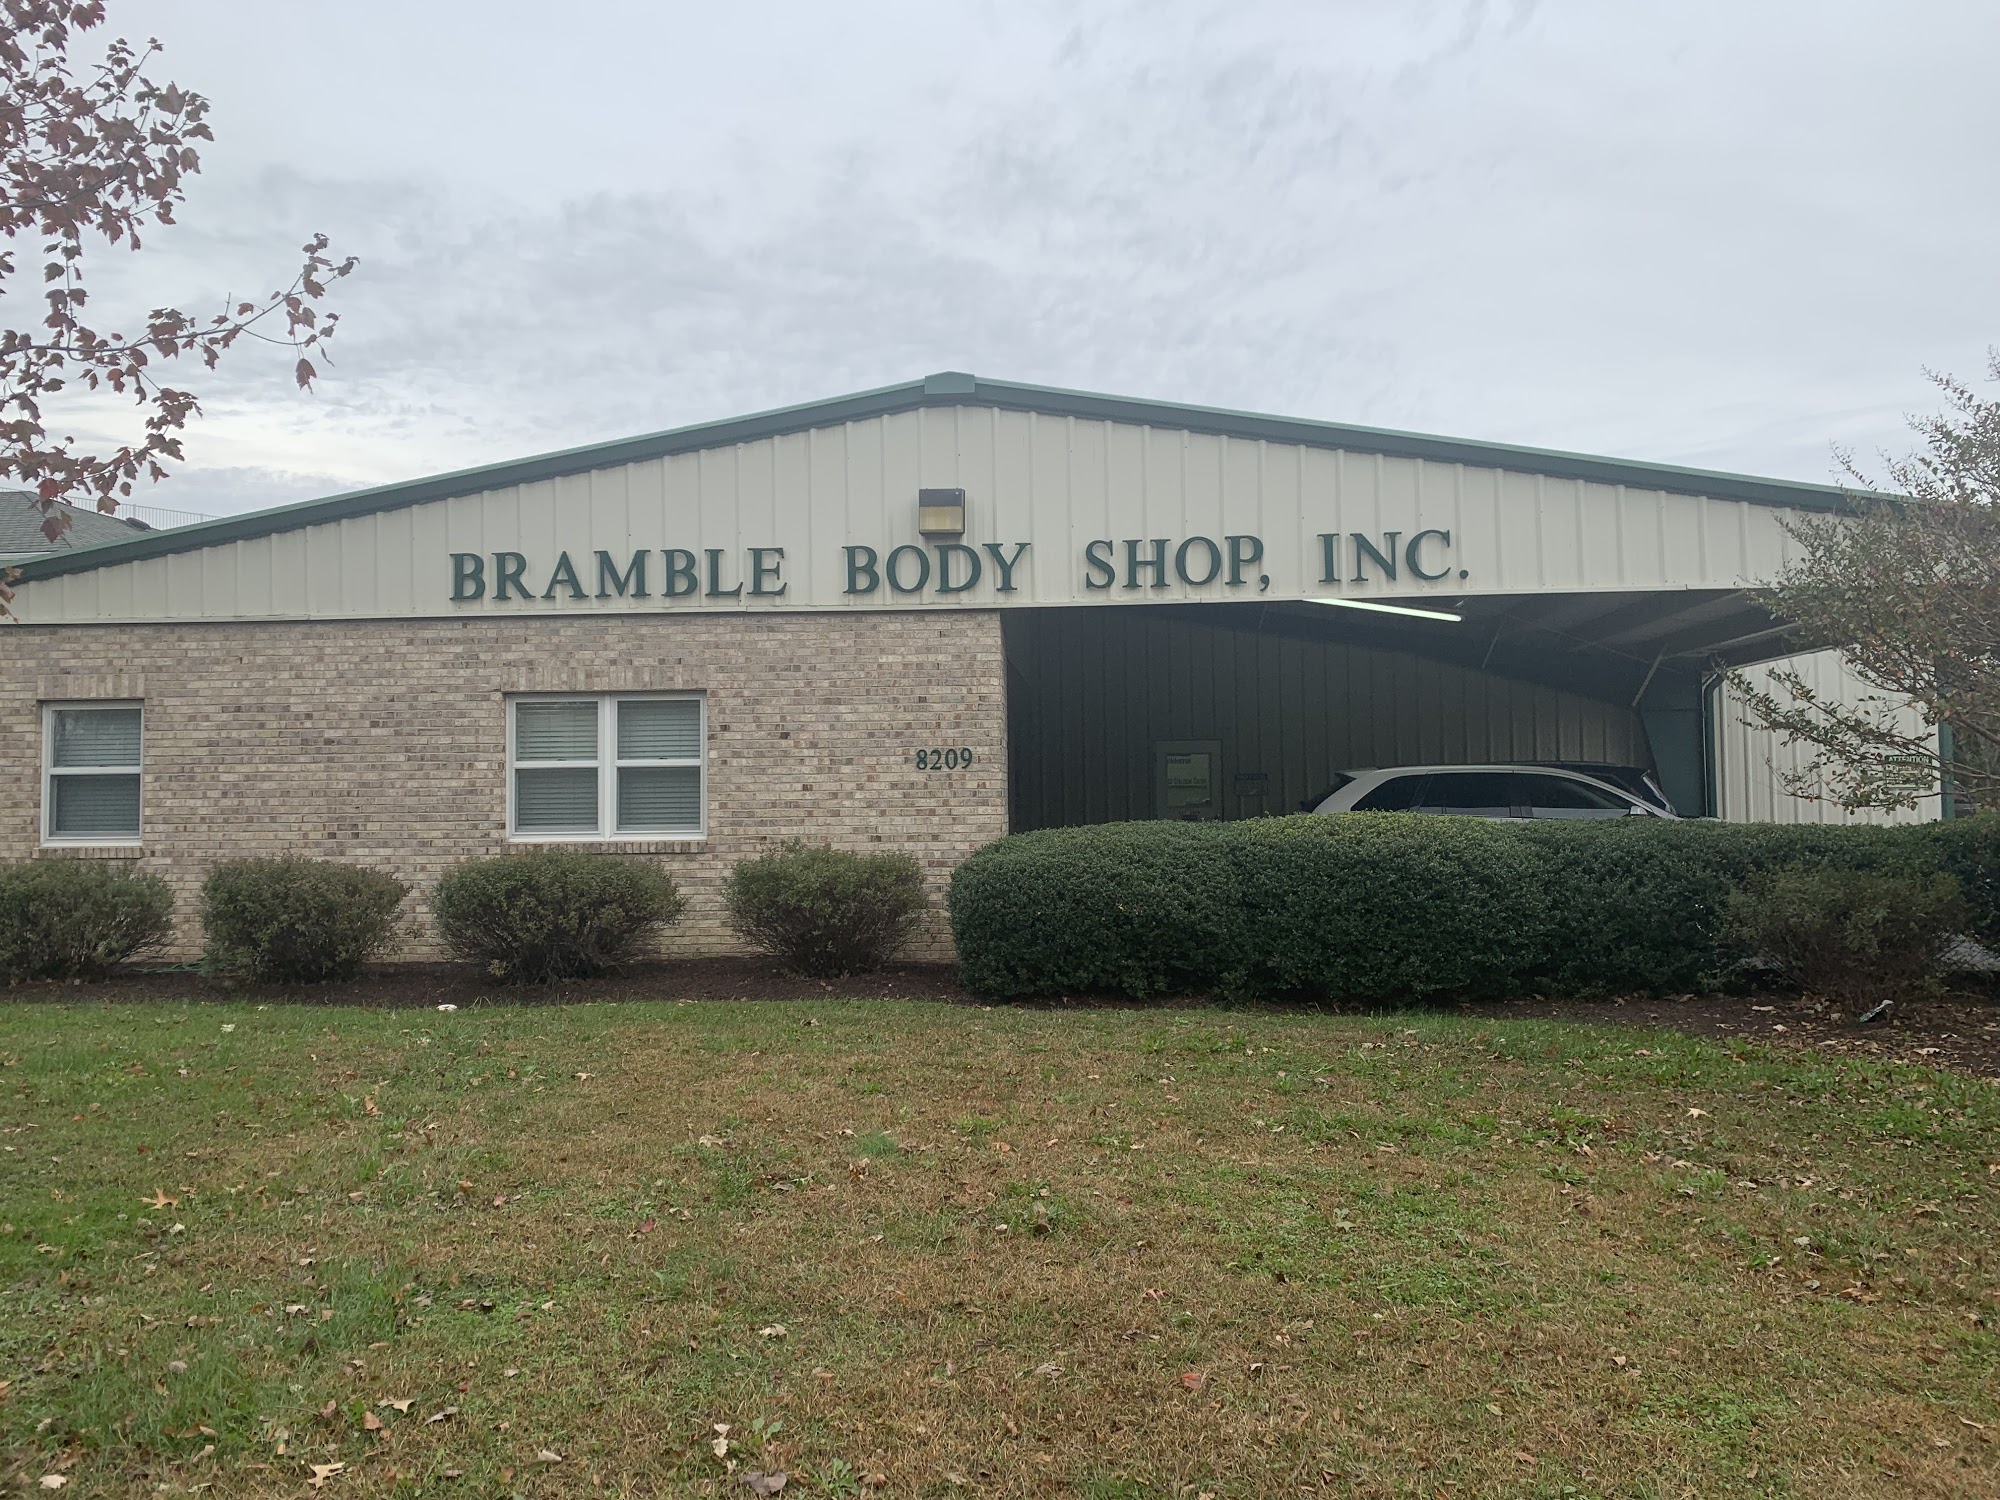 Bramble Body Shop, Inc.